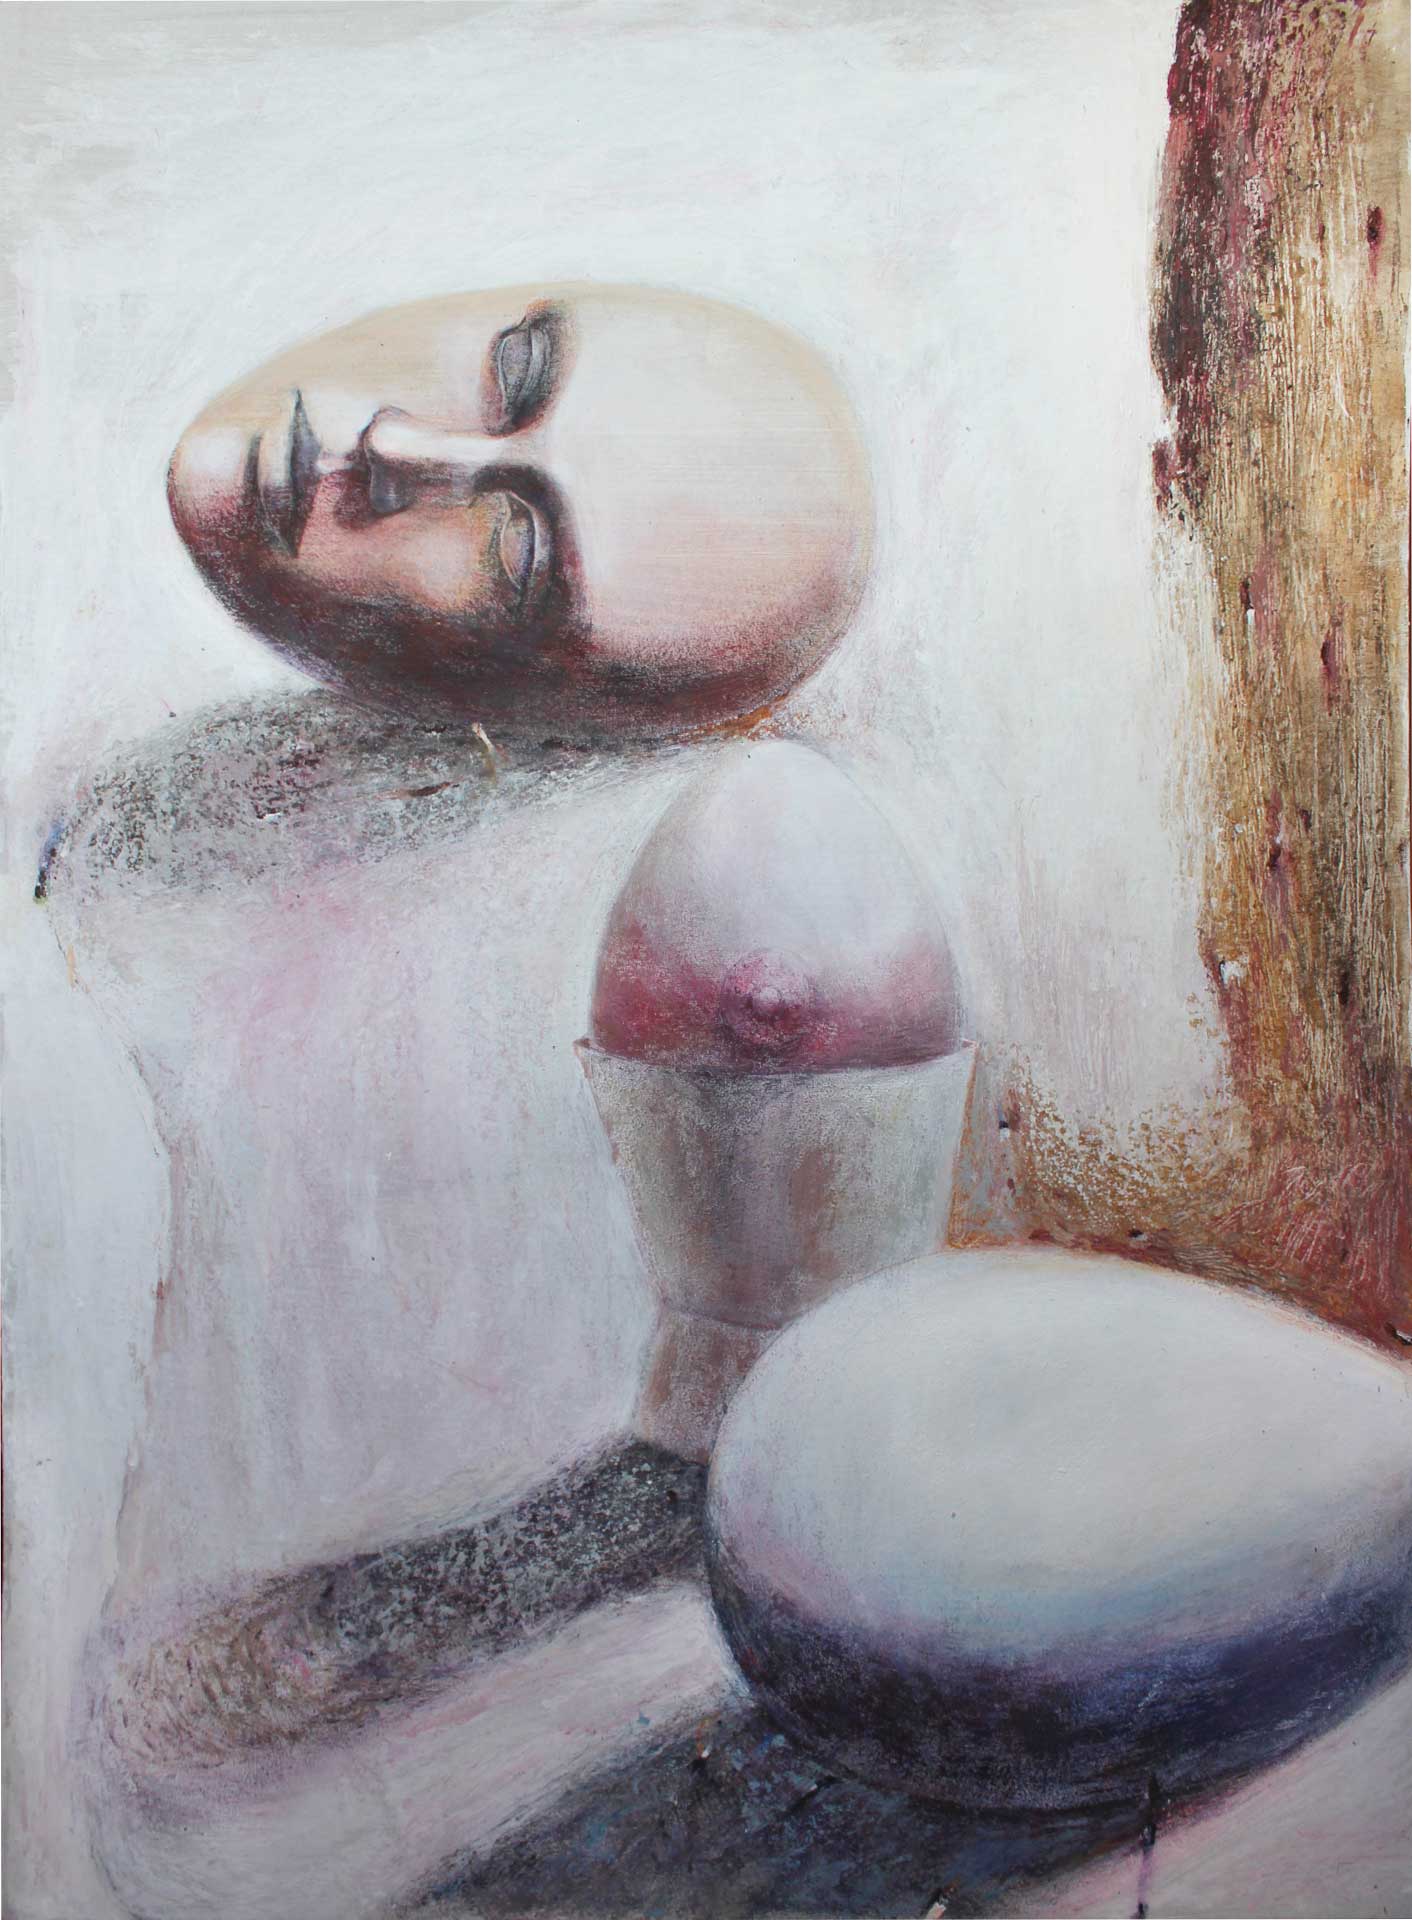 Cosmobreakfast - 1, Elena Duvanova, Buy the painting Acrylic